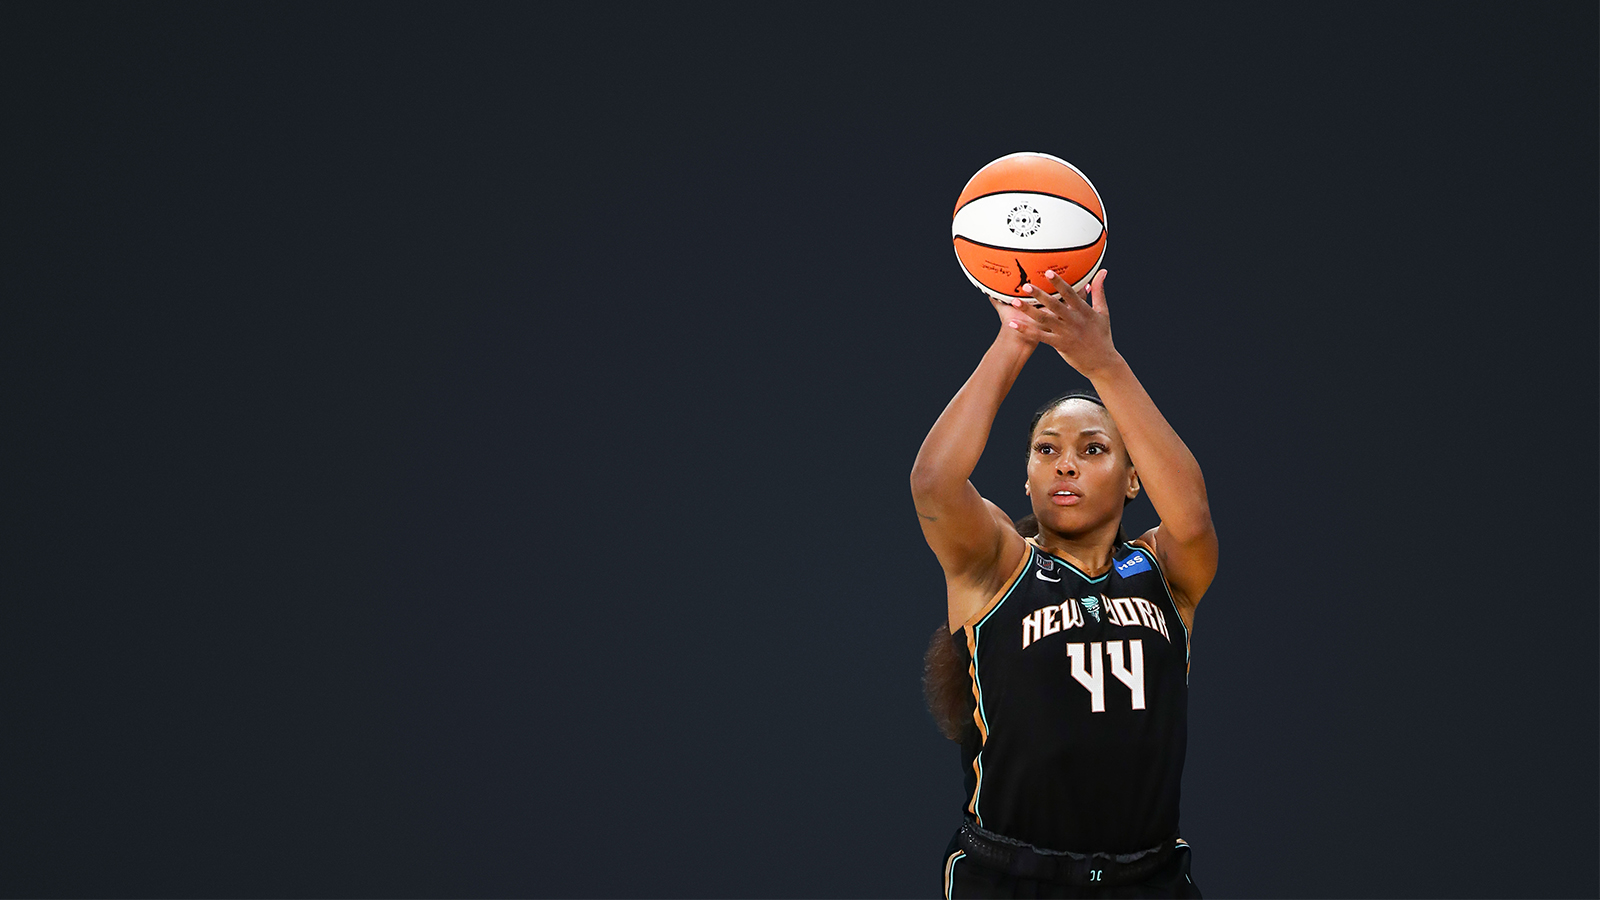 WNBA player shooting a basketball